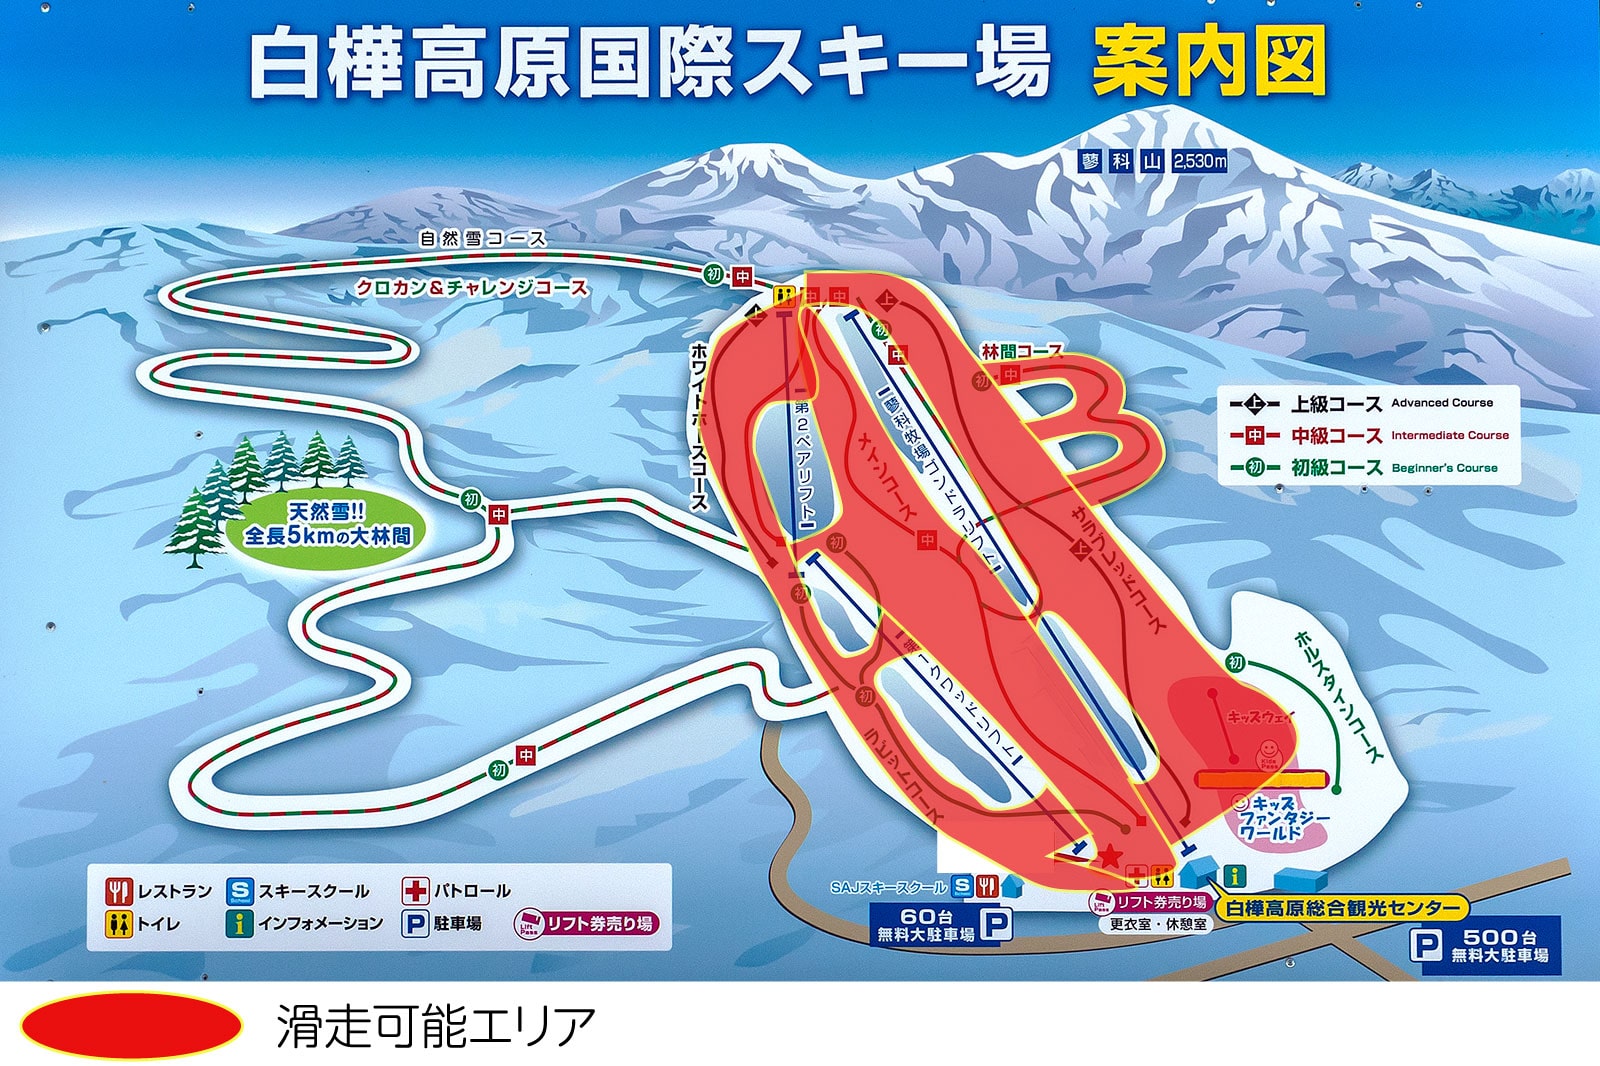 2020年2月7日現在の白樺高原国際スキー場、滑走可能エリア